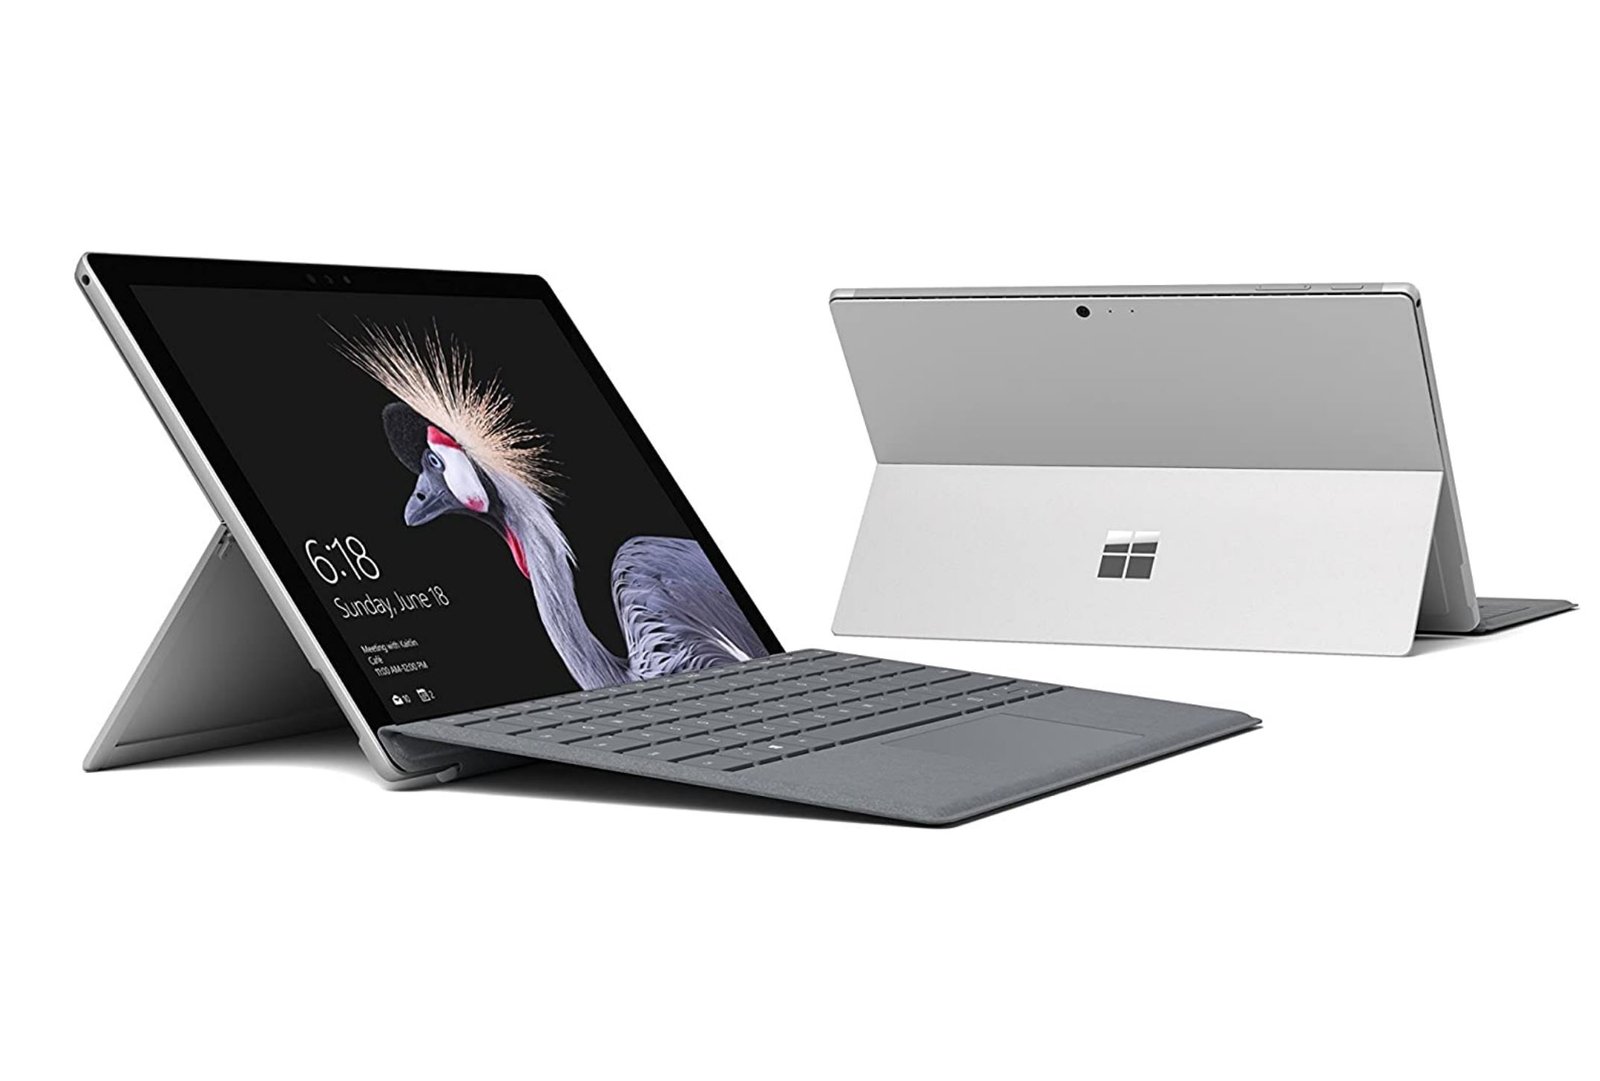 Renewed Microsoft Surface Pro 4